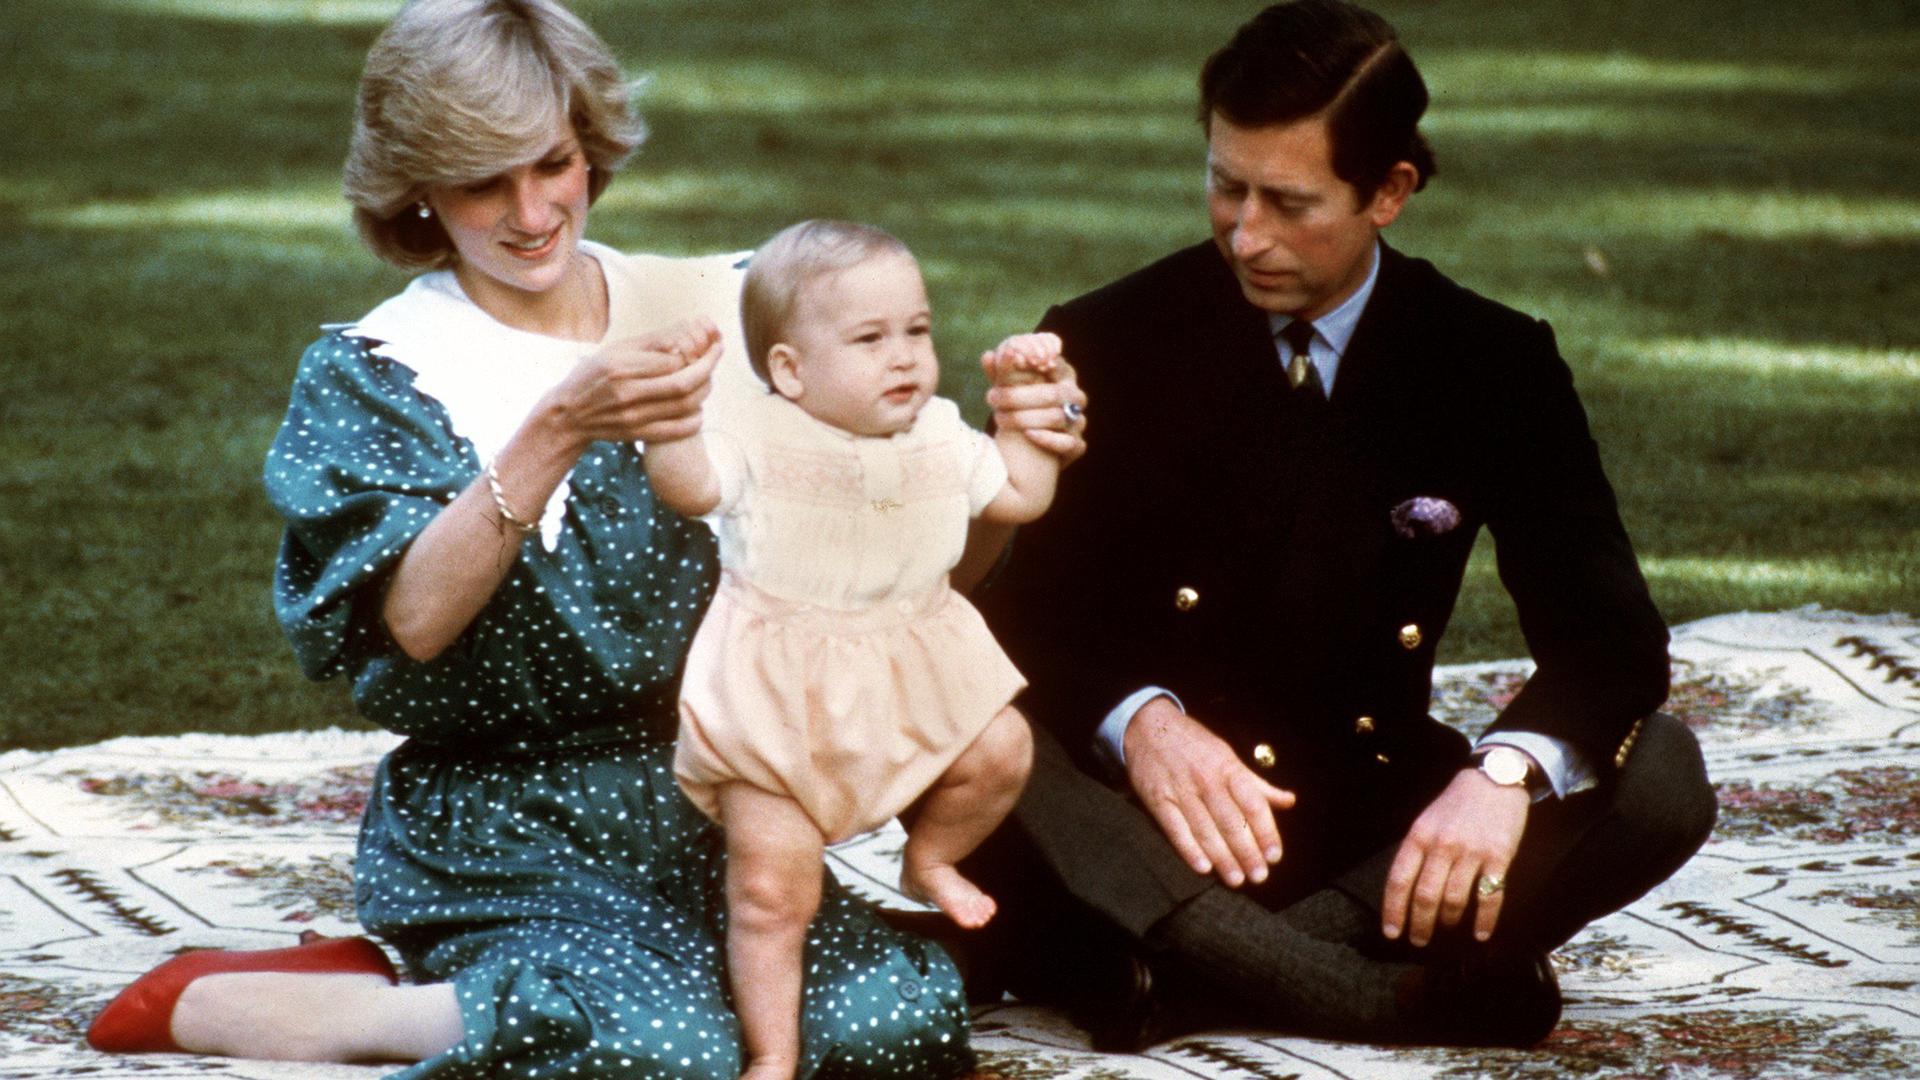 ARCHIV - Prinz Charles und Prinzessin Diana posieren mit ihrem erstgeborenen Sohn Prinz William während ihres Staatsbesuches in Australien (Foto vom 23.04.1983). Diana starb vor 15 Jahren am 31.08.1997. Foto: dpa (zu dpa-Themenpaket "15. Todestag von Prinzessin Diana") +++ dpa-Bildfunk +++